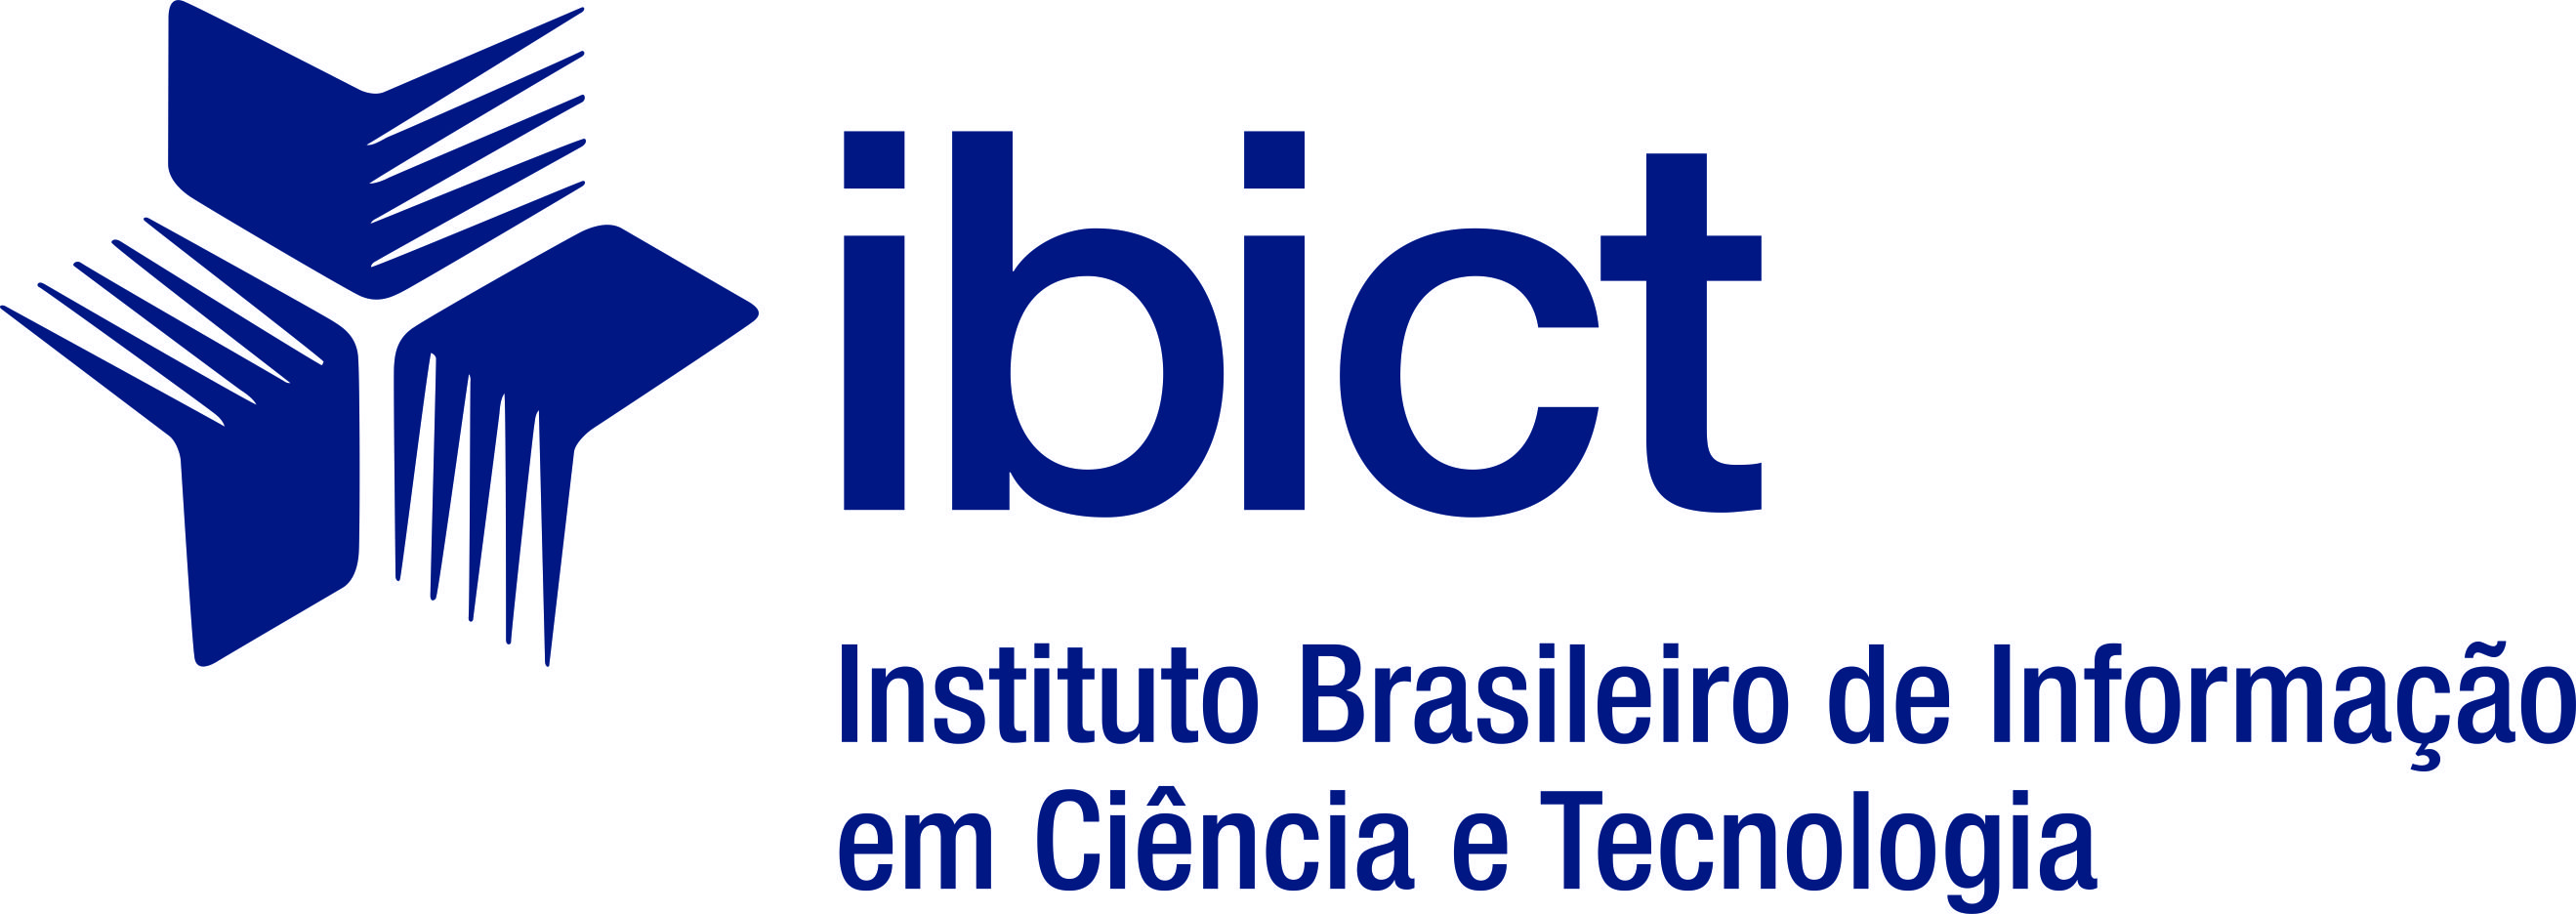 Instituto Brasileiro de Informação em Ciência e Tecnologia (IBICT)